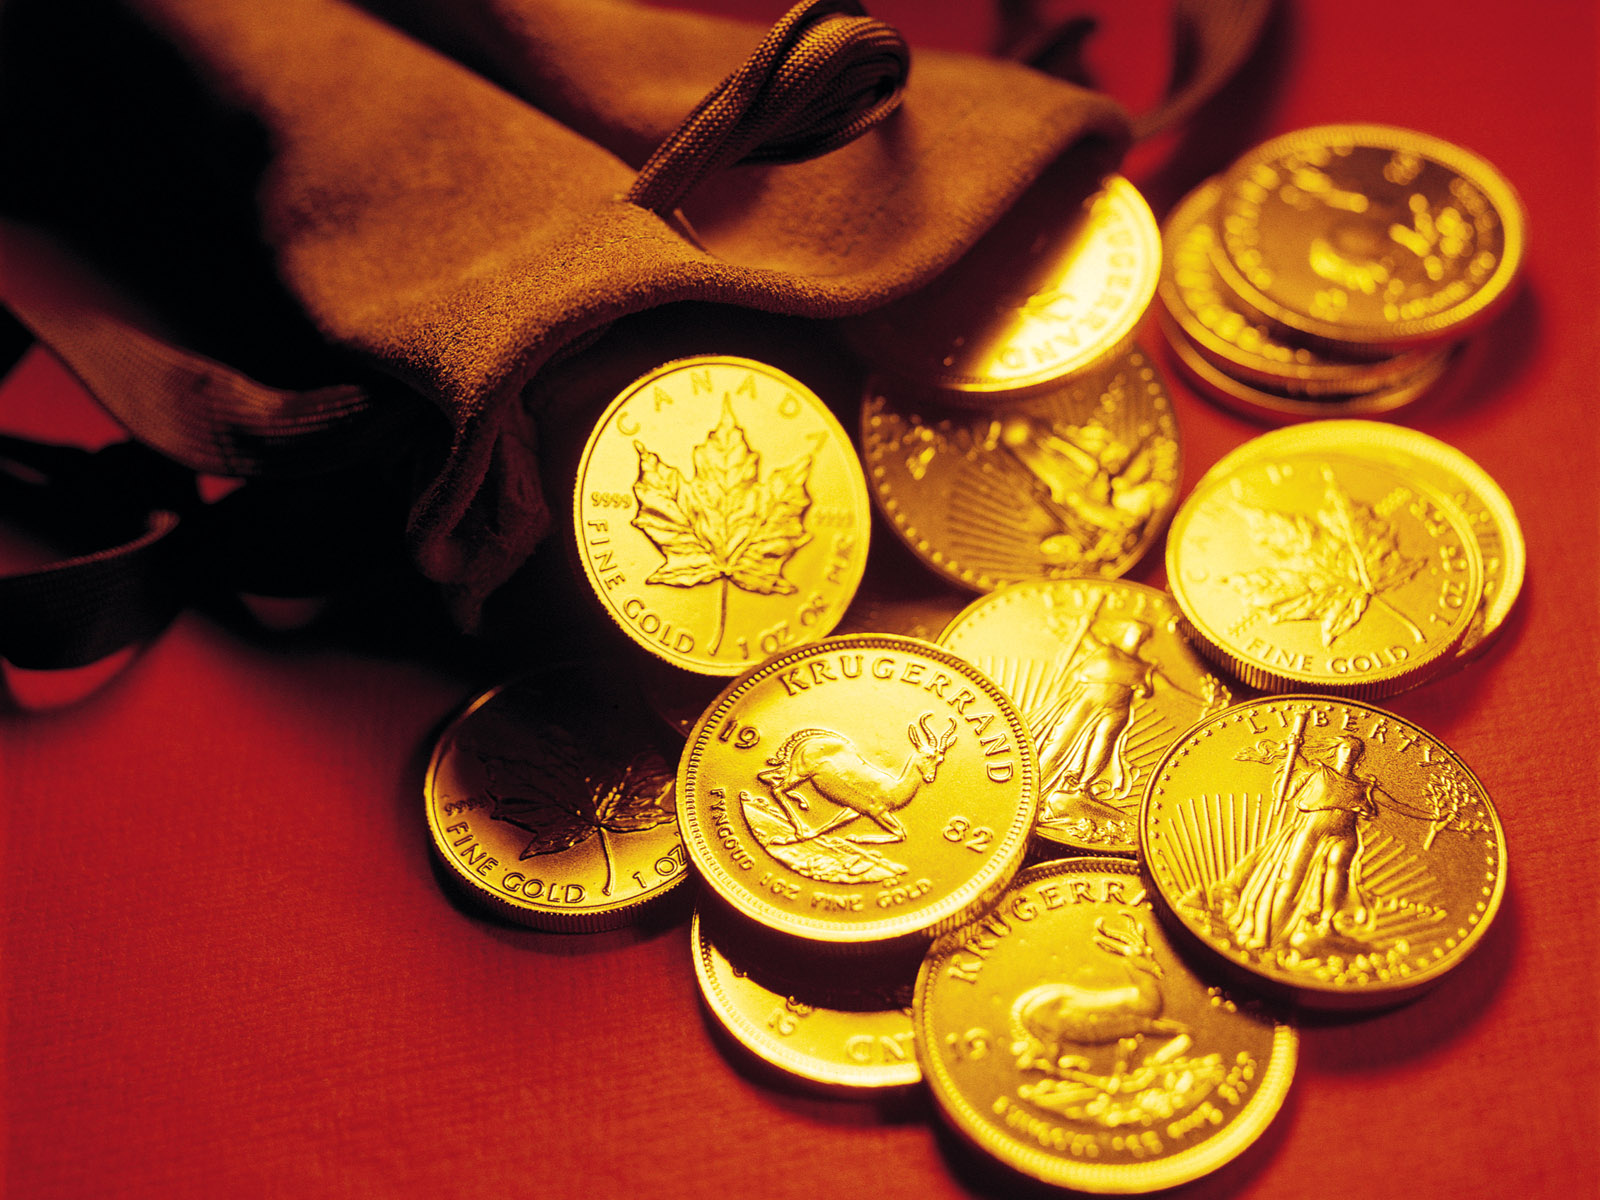 Gold Coins HD Image Wallpaper At GetHDpic